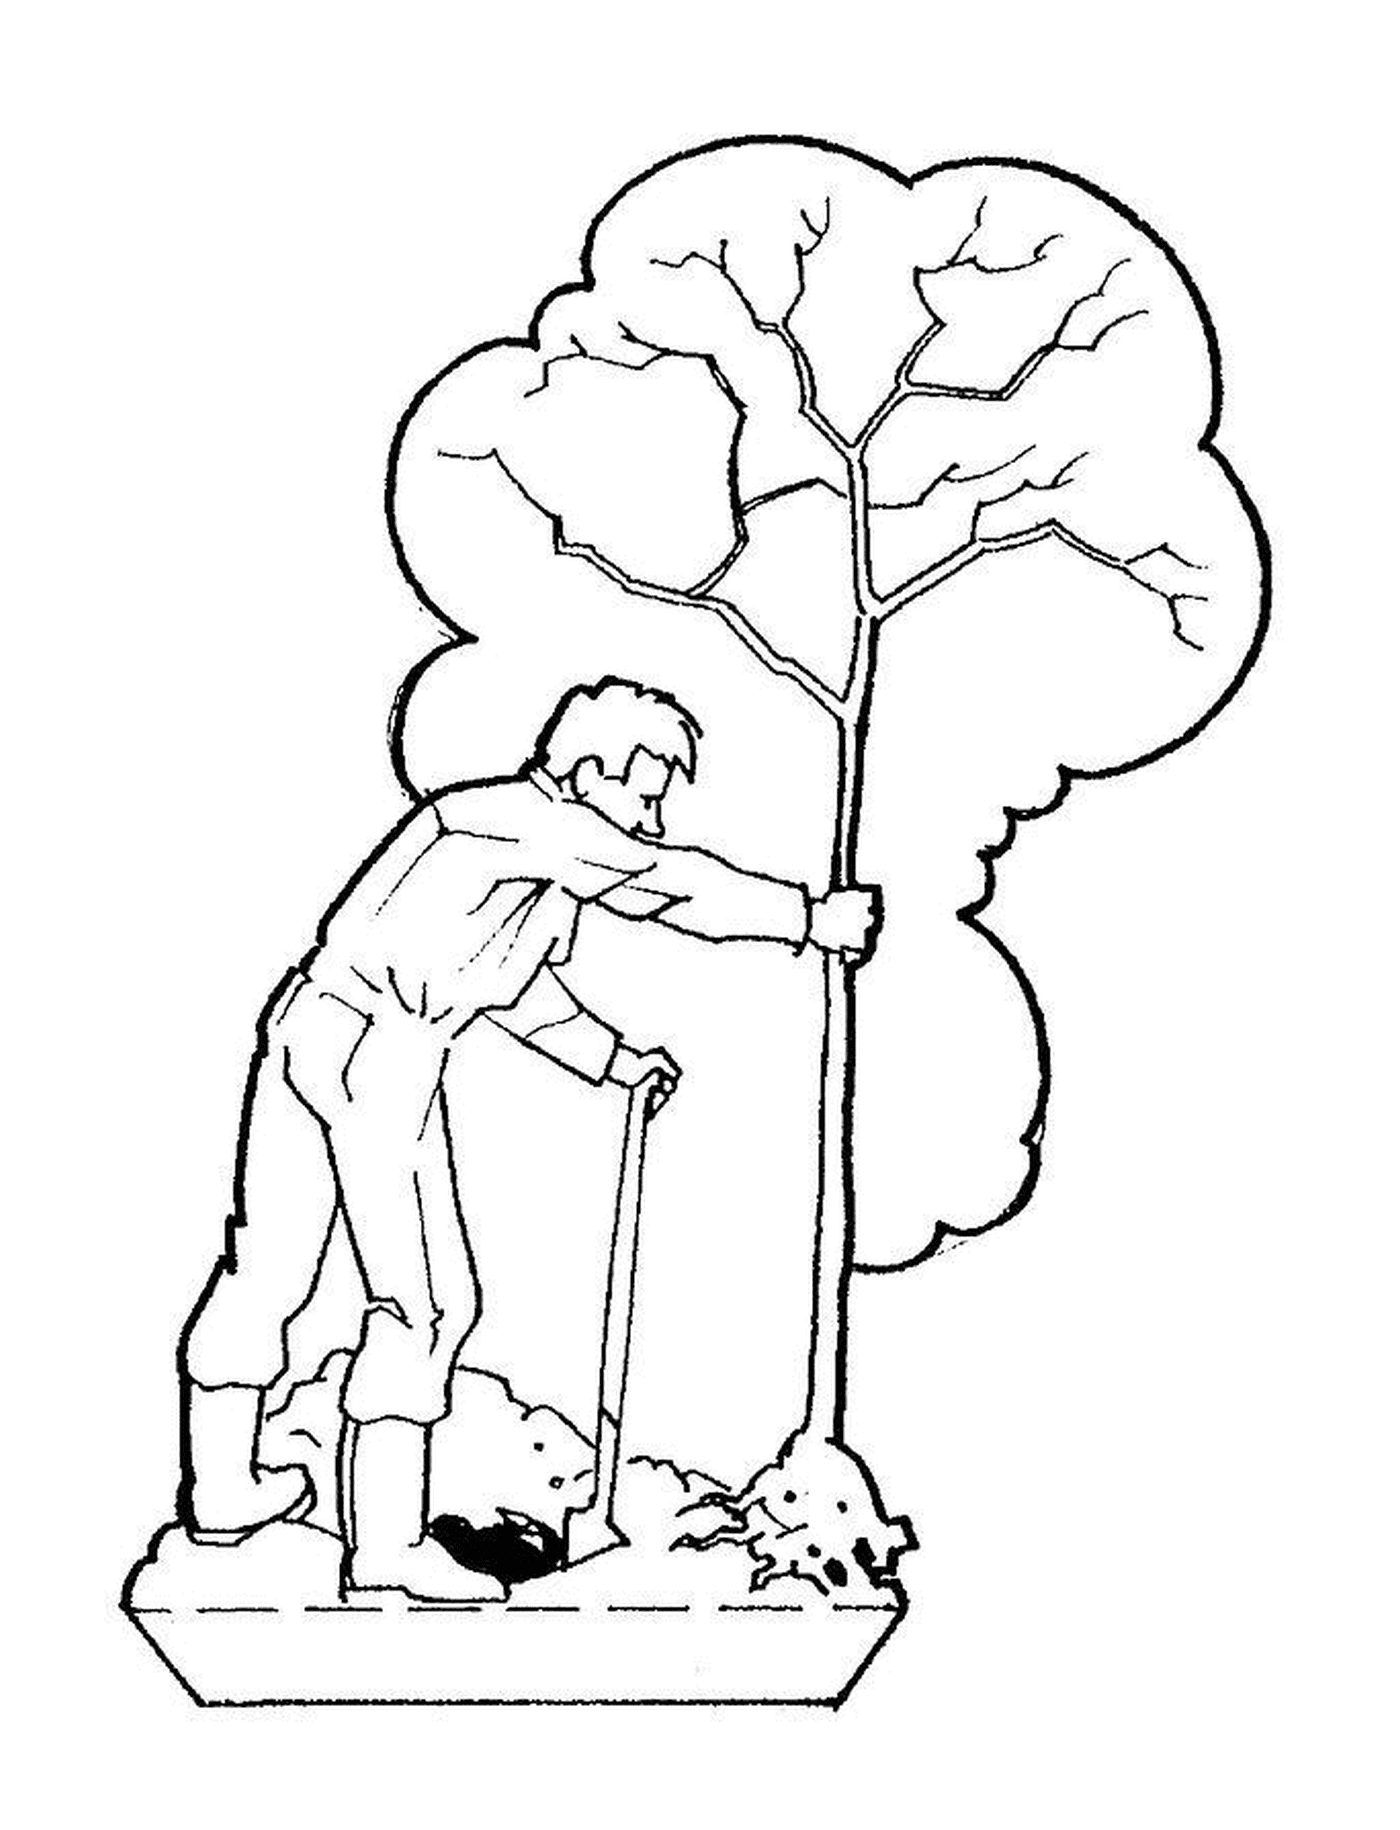  Un uomo taglia un albero con un bastone 